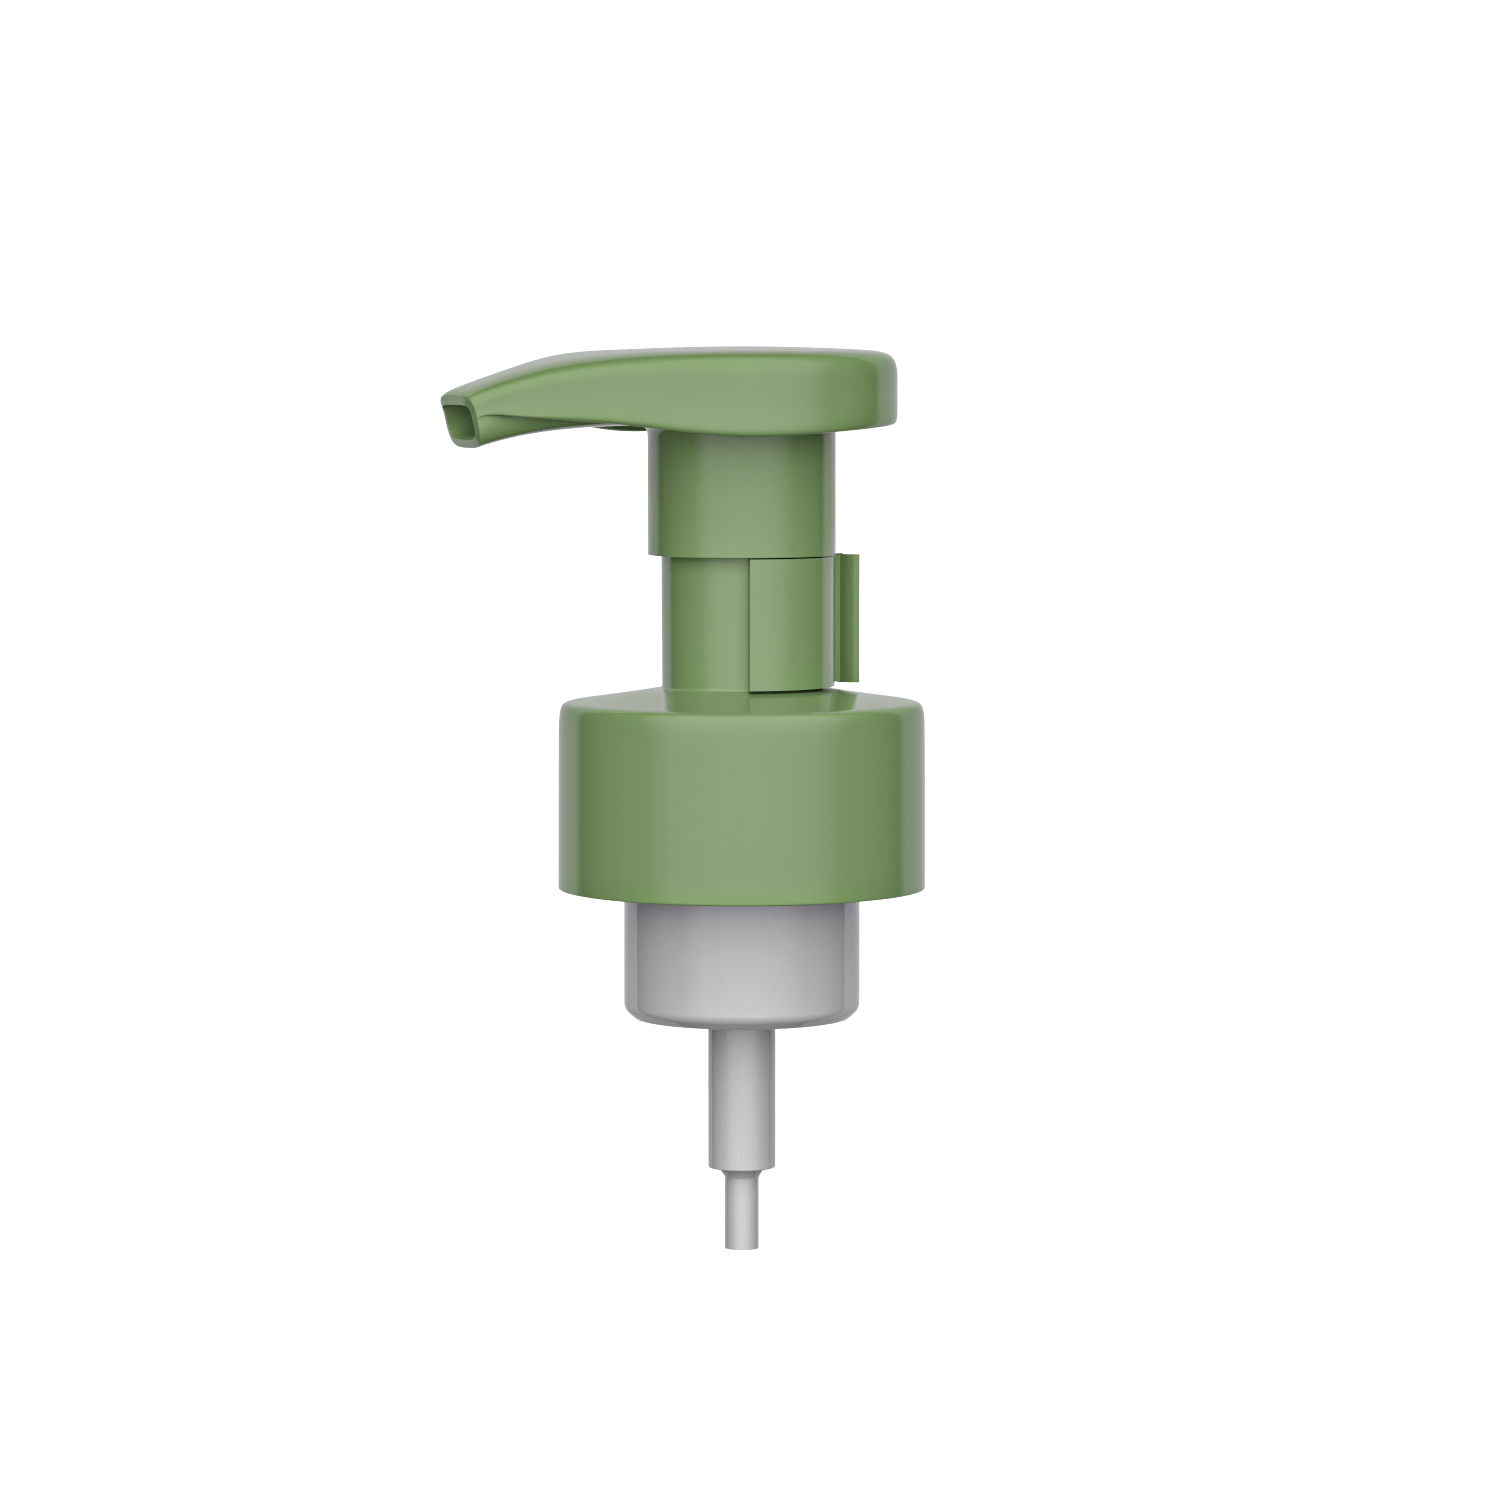 HD-502C 43/410 صابون اليد شامبو تنظيف الاستحمام 0.8 مللي / T مضخة رغوة